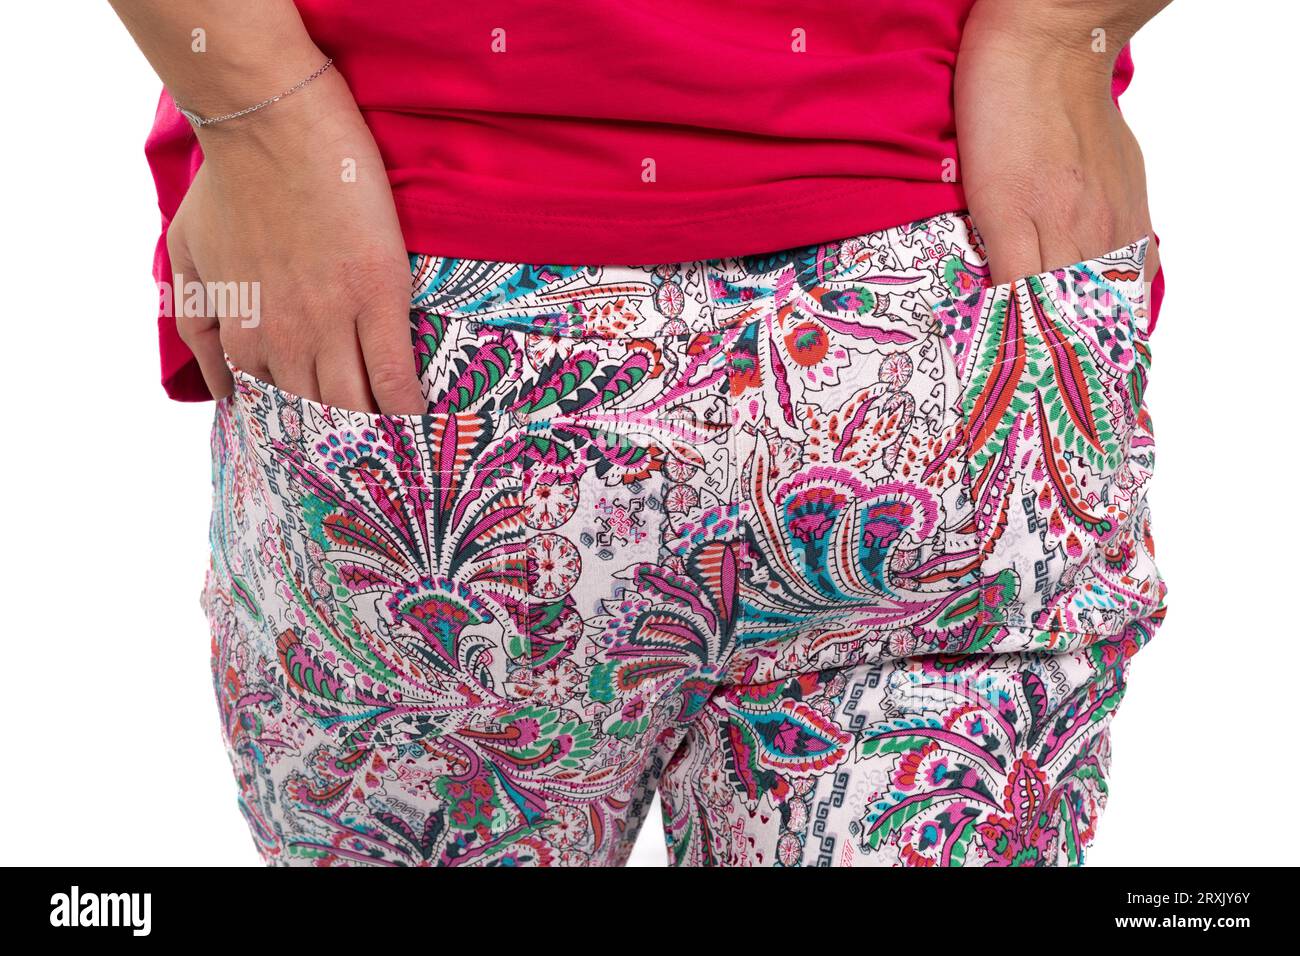 Ein Nahaufnahme-Bild zeigt die Hände einer Frau, die bequem in den hinteren Taschen ihrer farbenfrohen Hose mit Muster verstaut ist Stockfoto